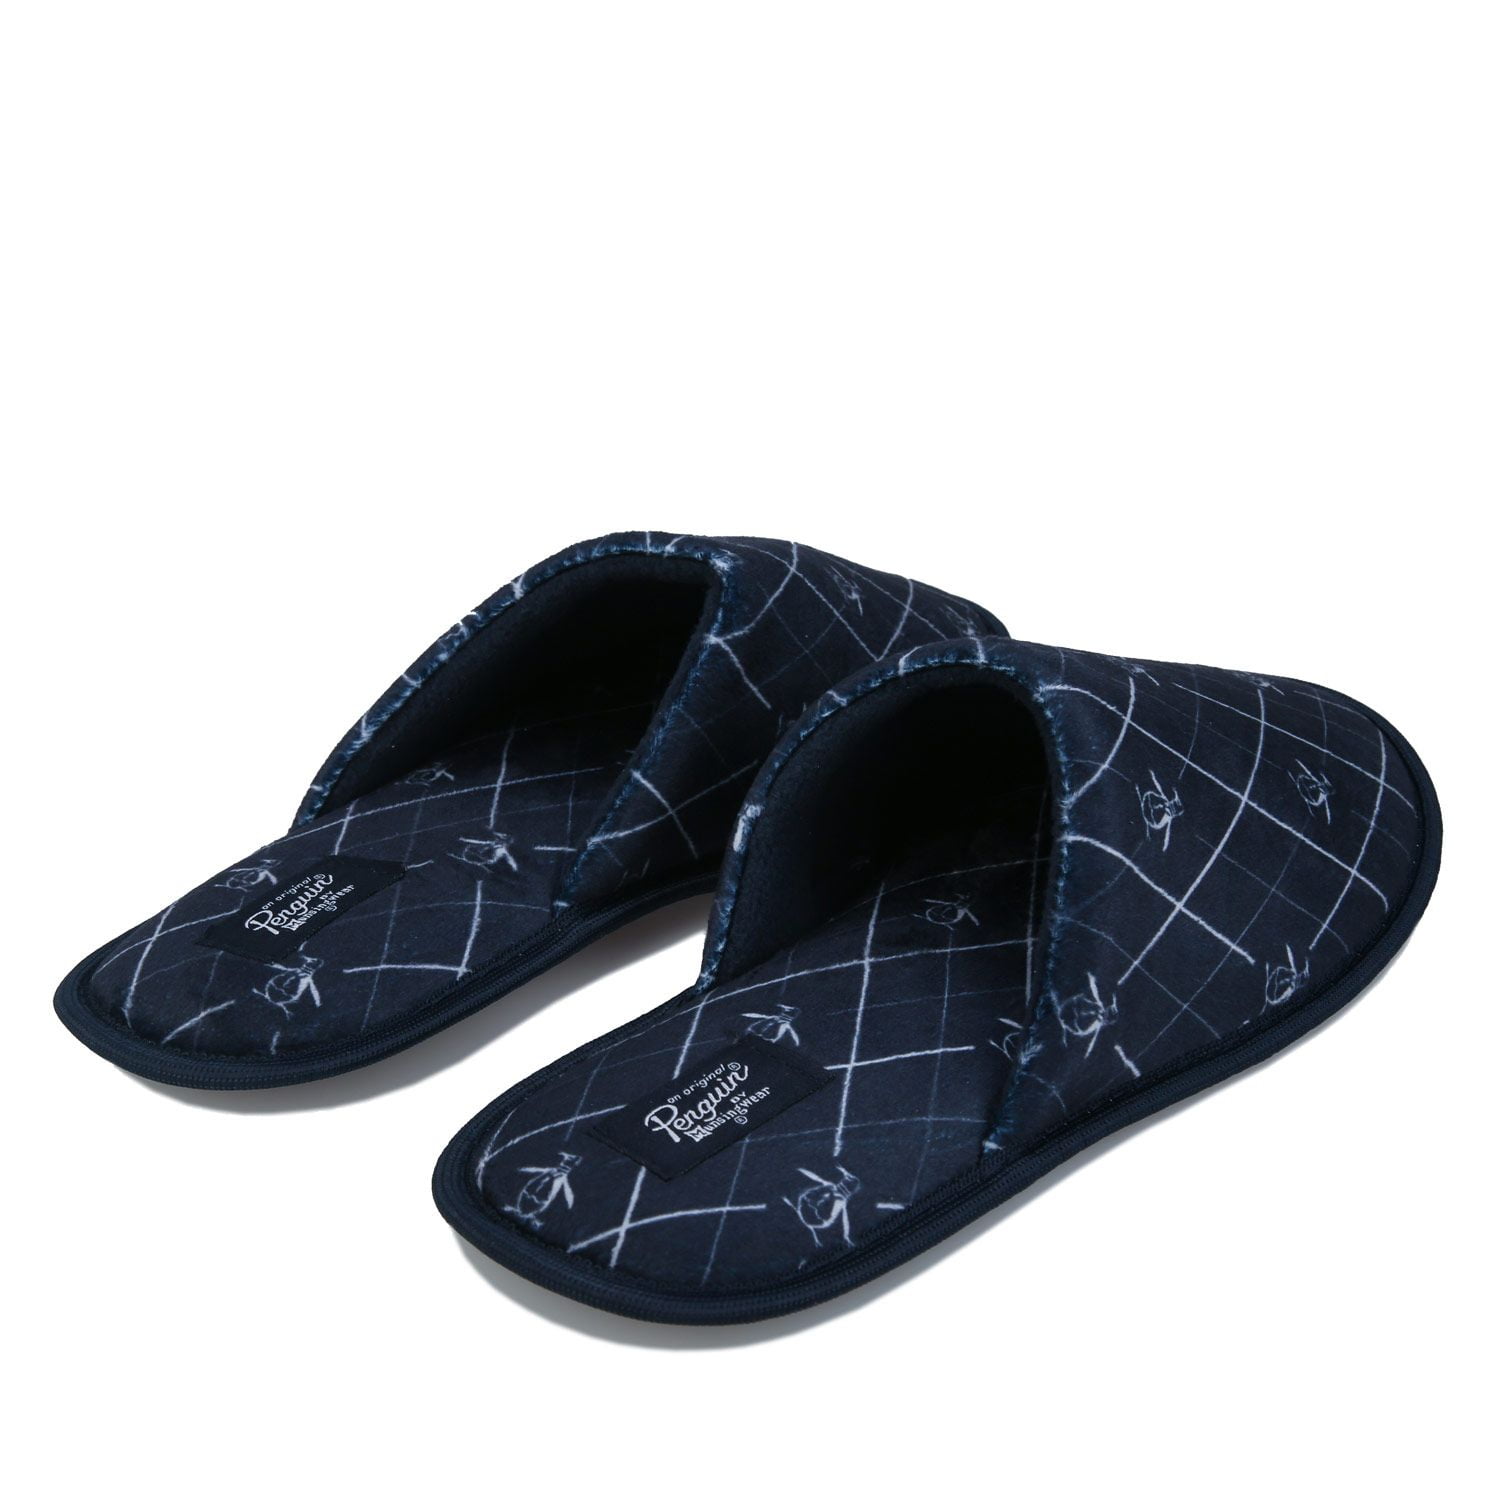 Penguin Unisex Slippers for sale | eBay